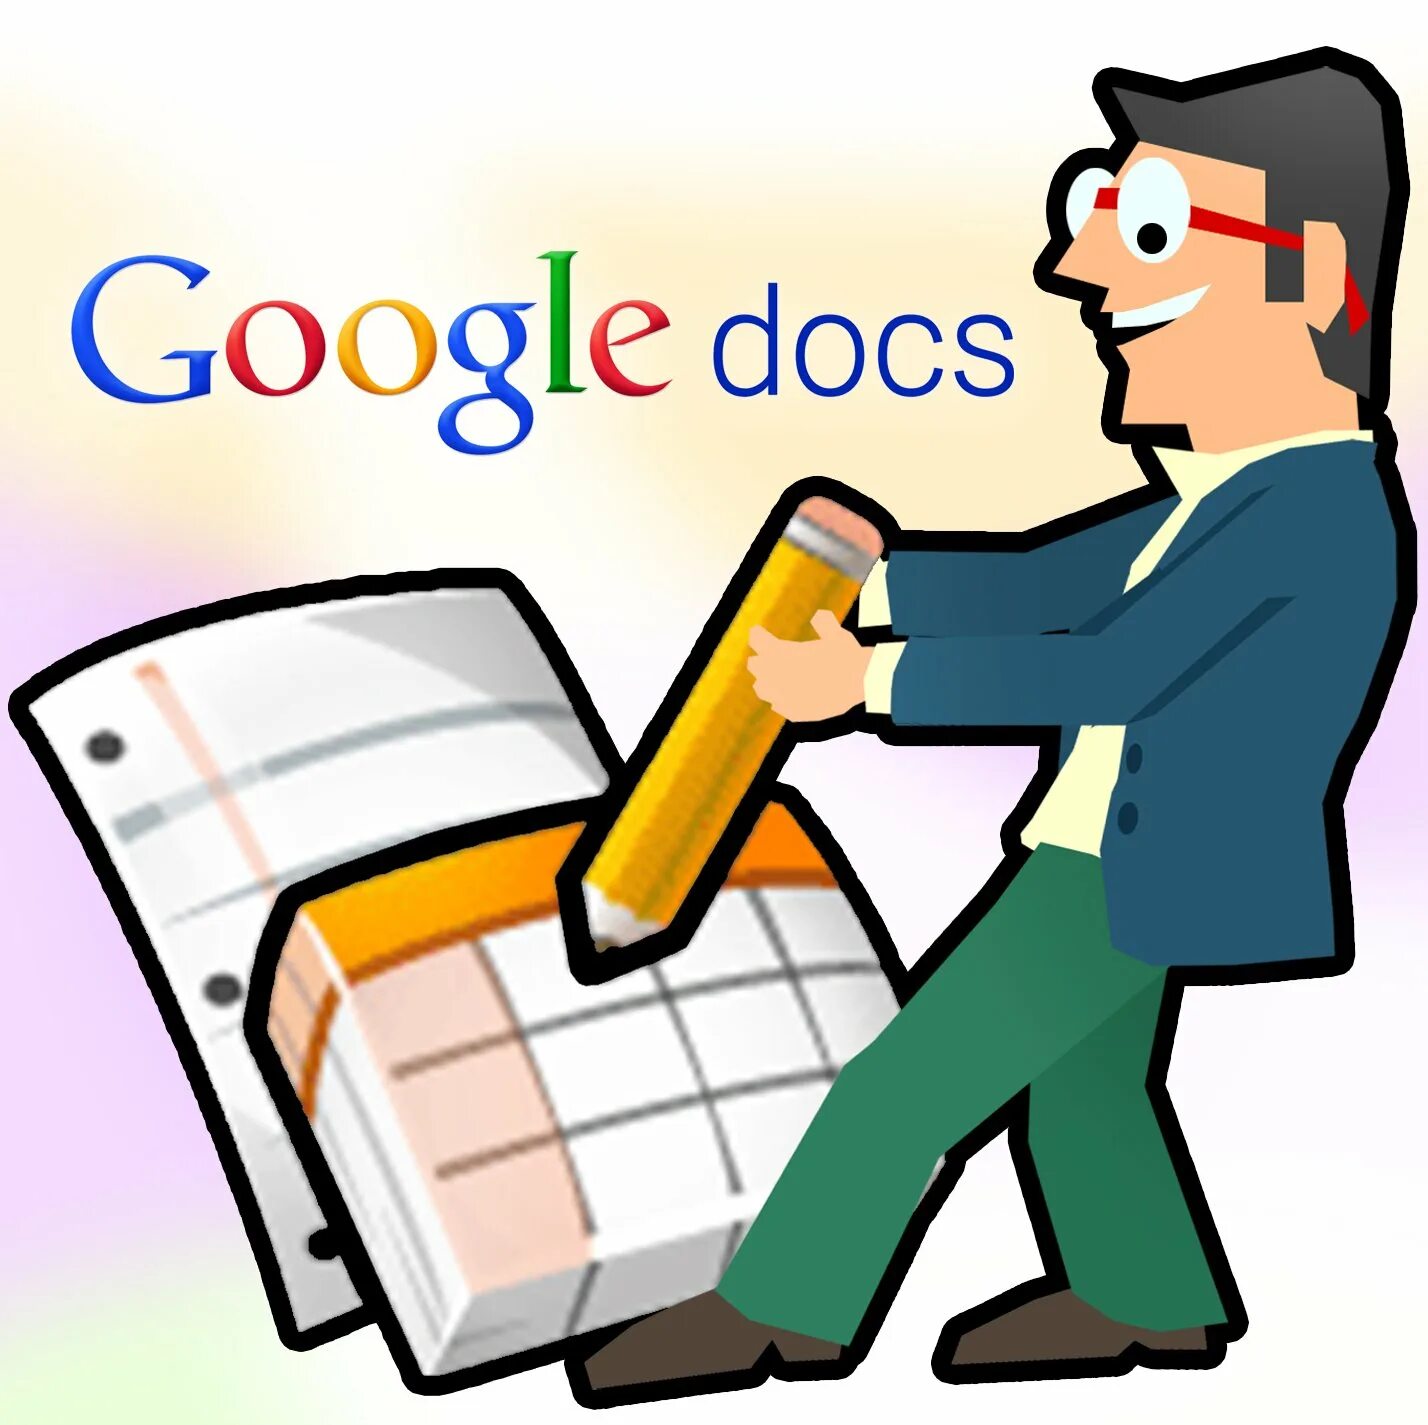 Google docs. Google документы картинки. Google docs документы. Гугл docs картинка.